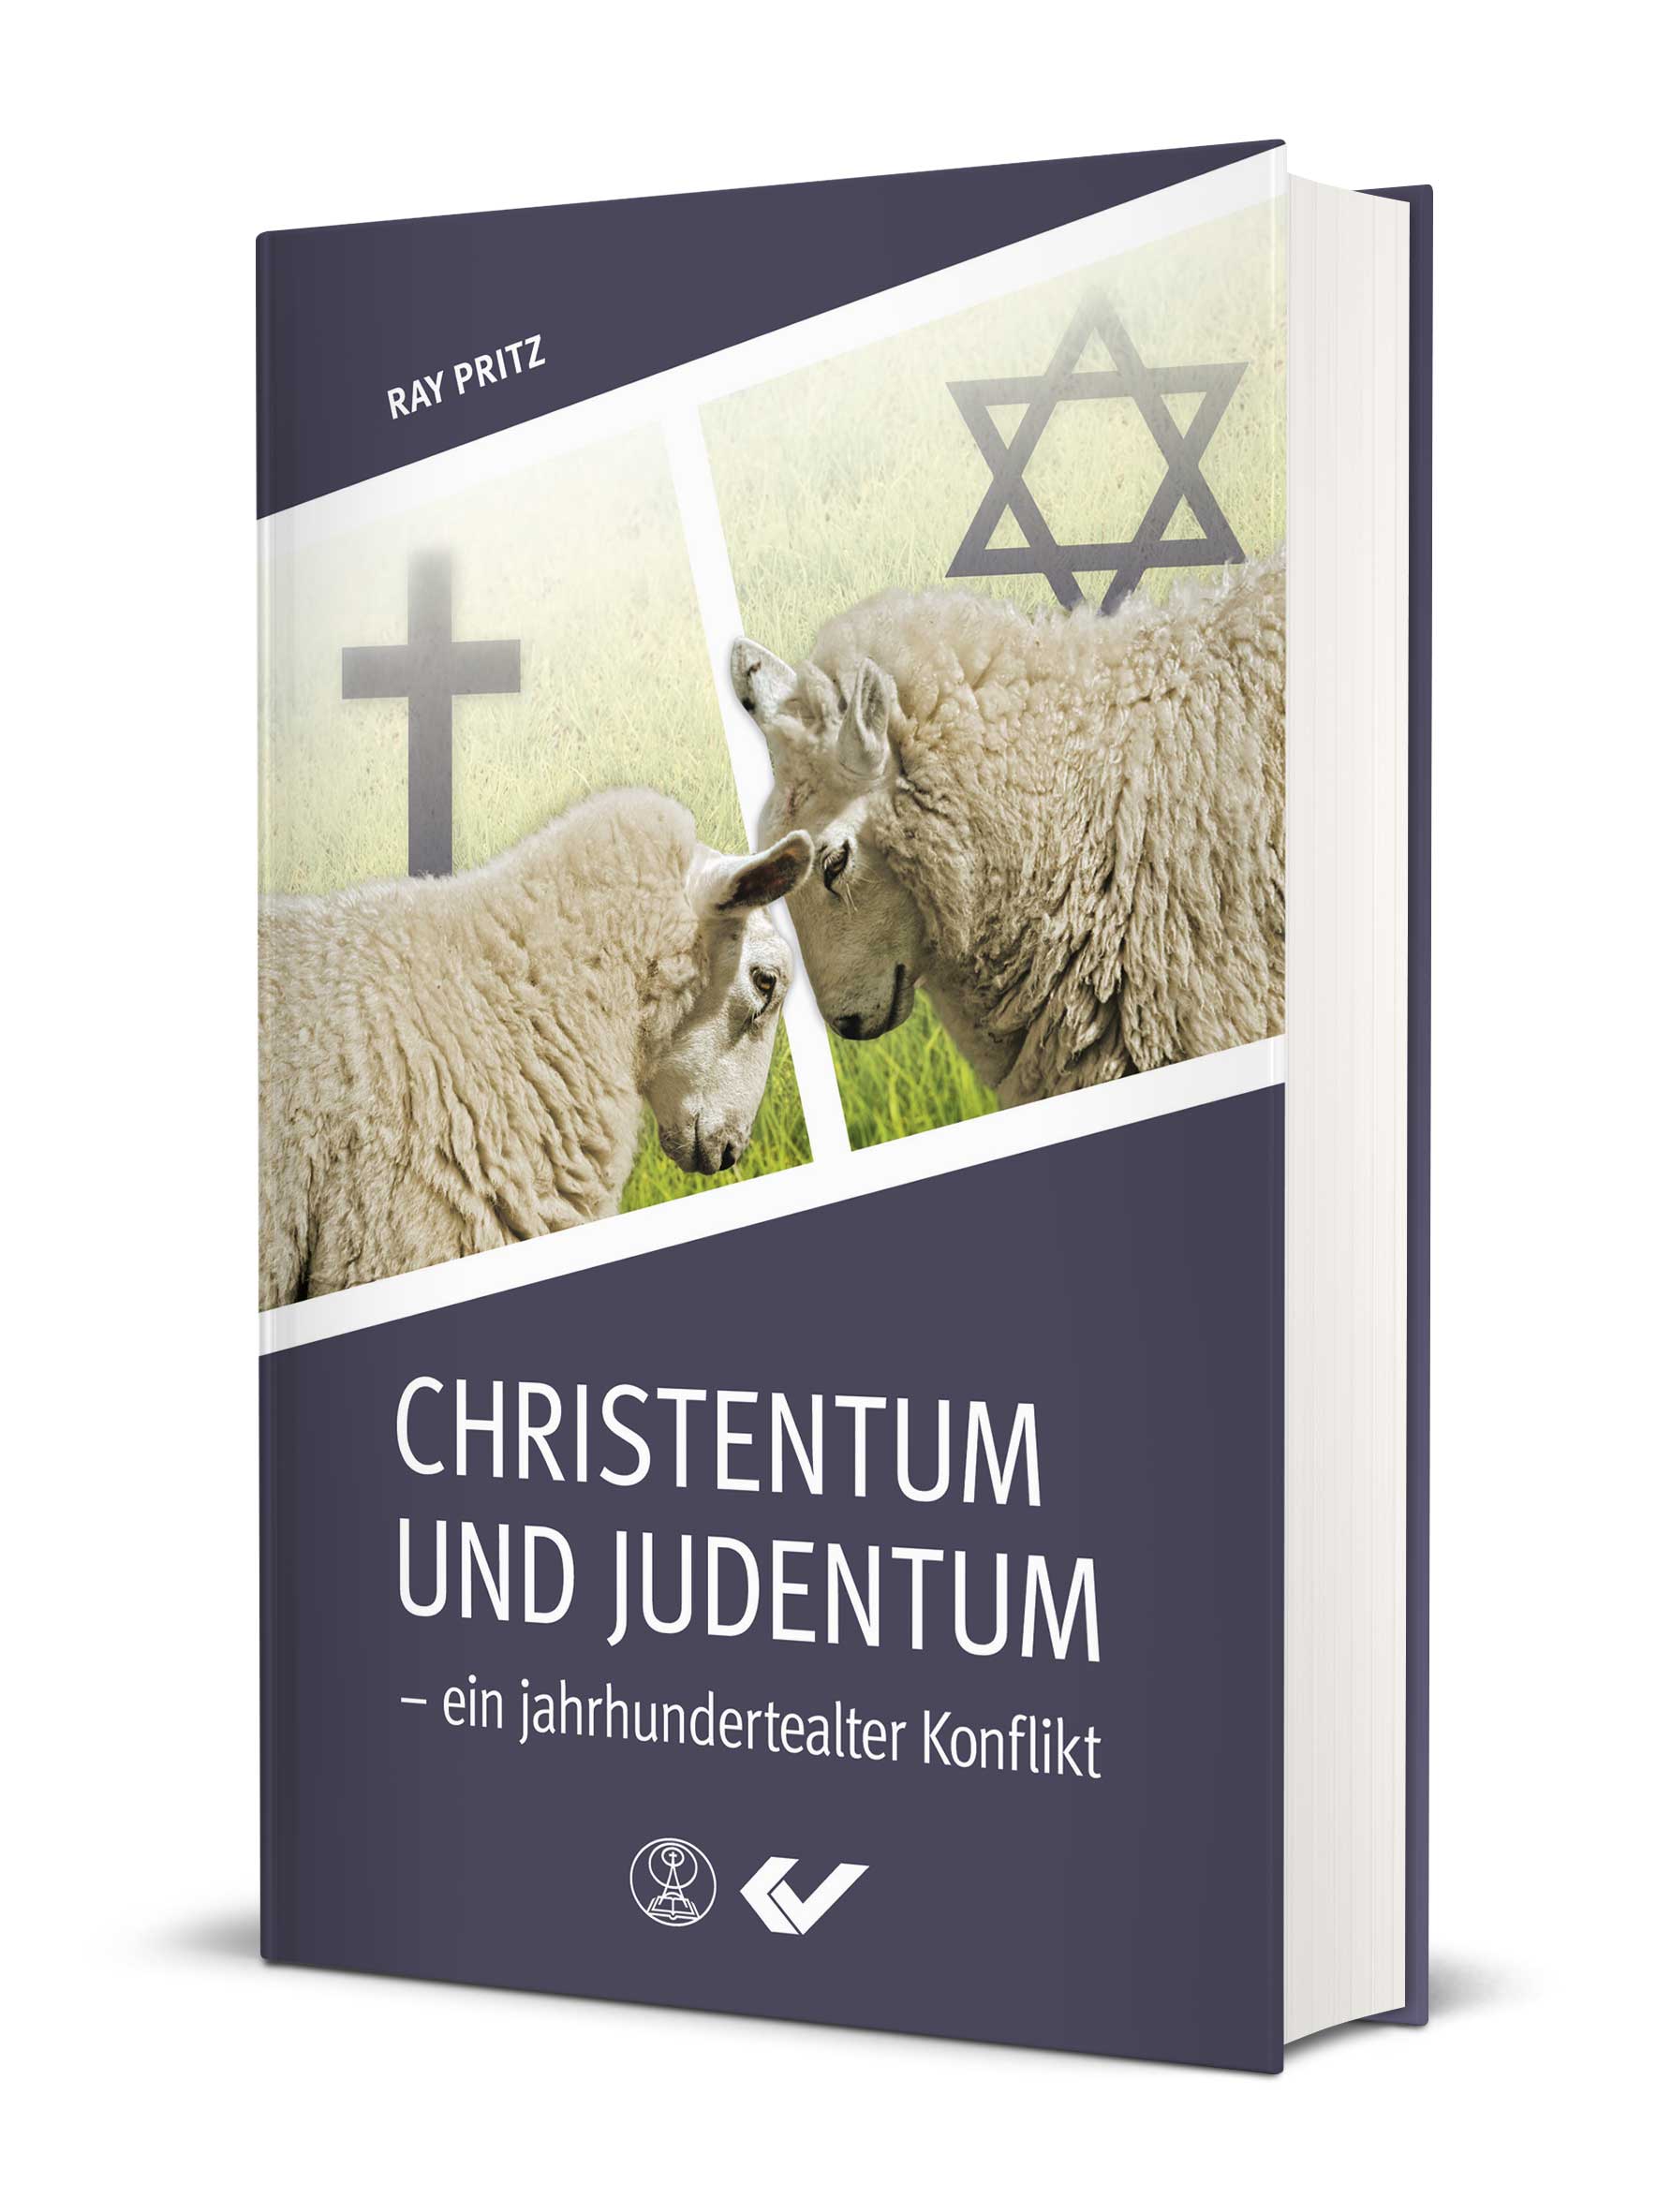 Ray Pritz: Christentum und Judentum - ein jahrhundertealter Konflikt